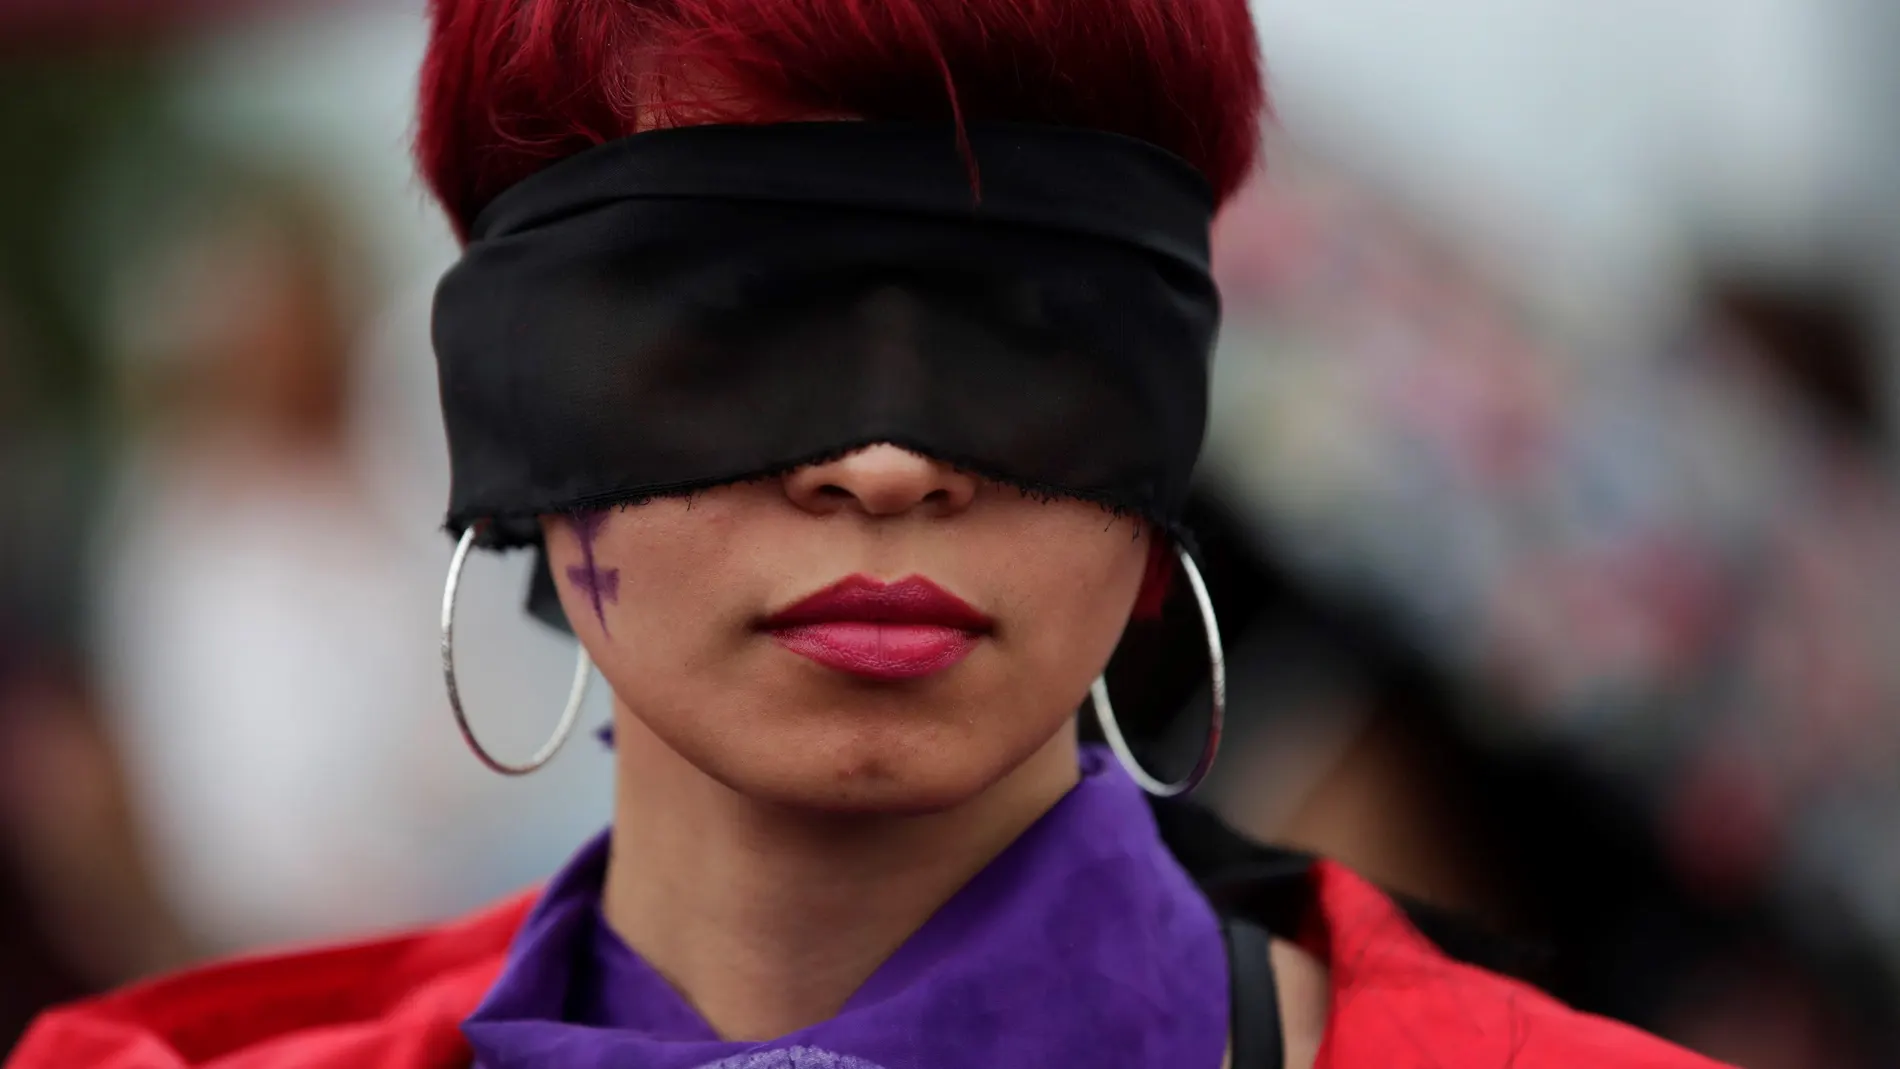 Protesta replica en Panamá coreografía chilena "Un violador en tu camino"